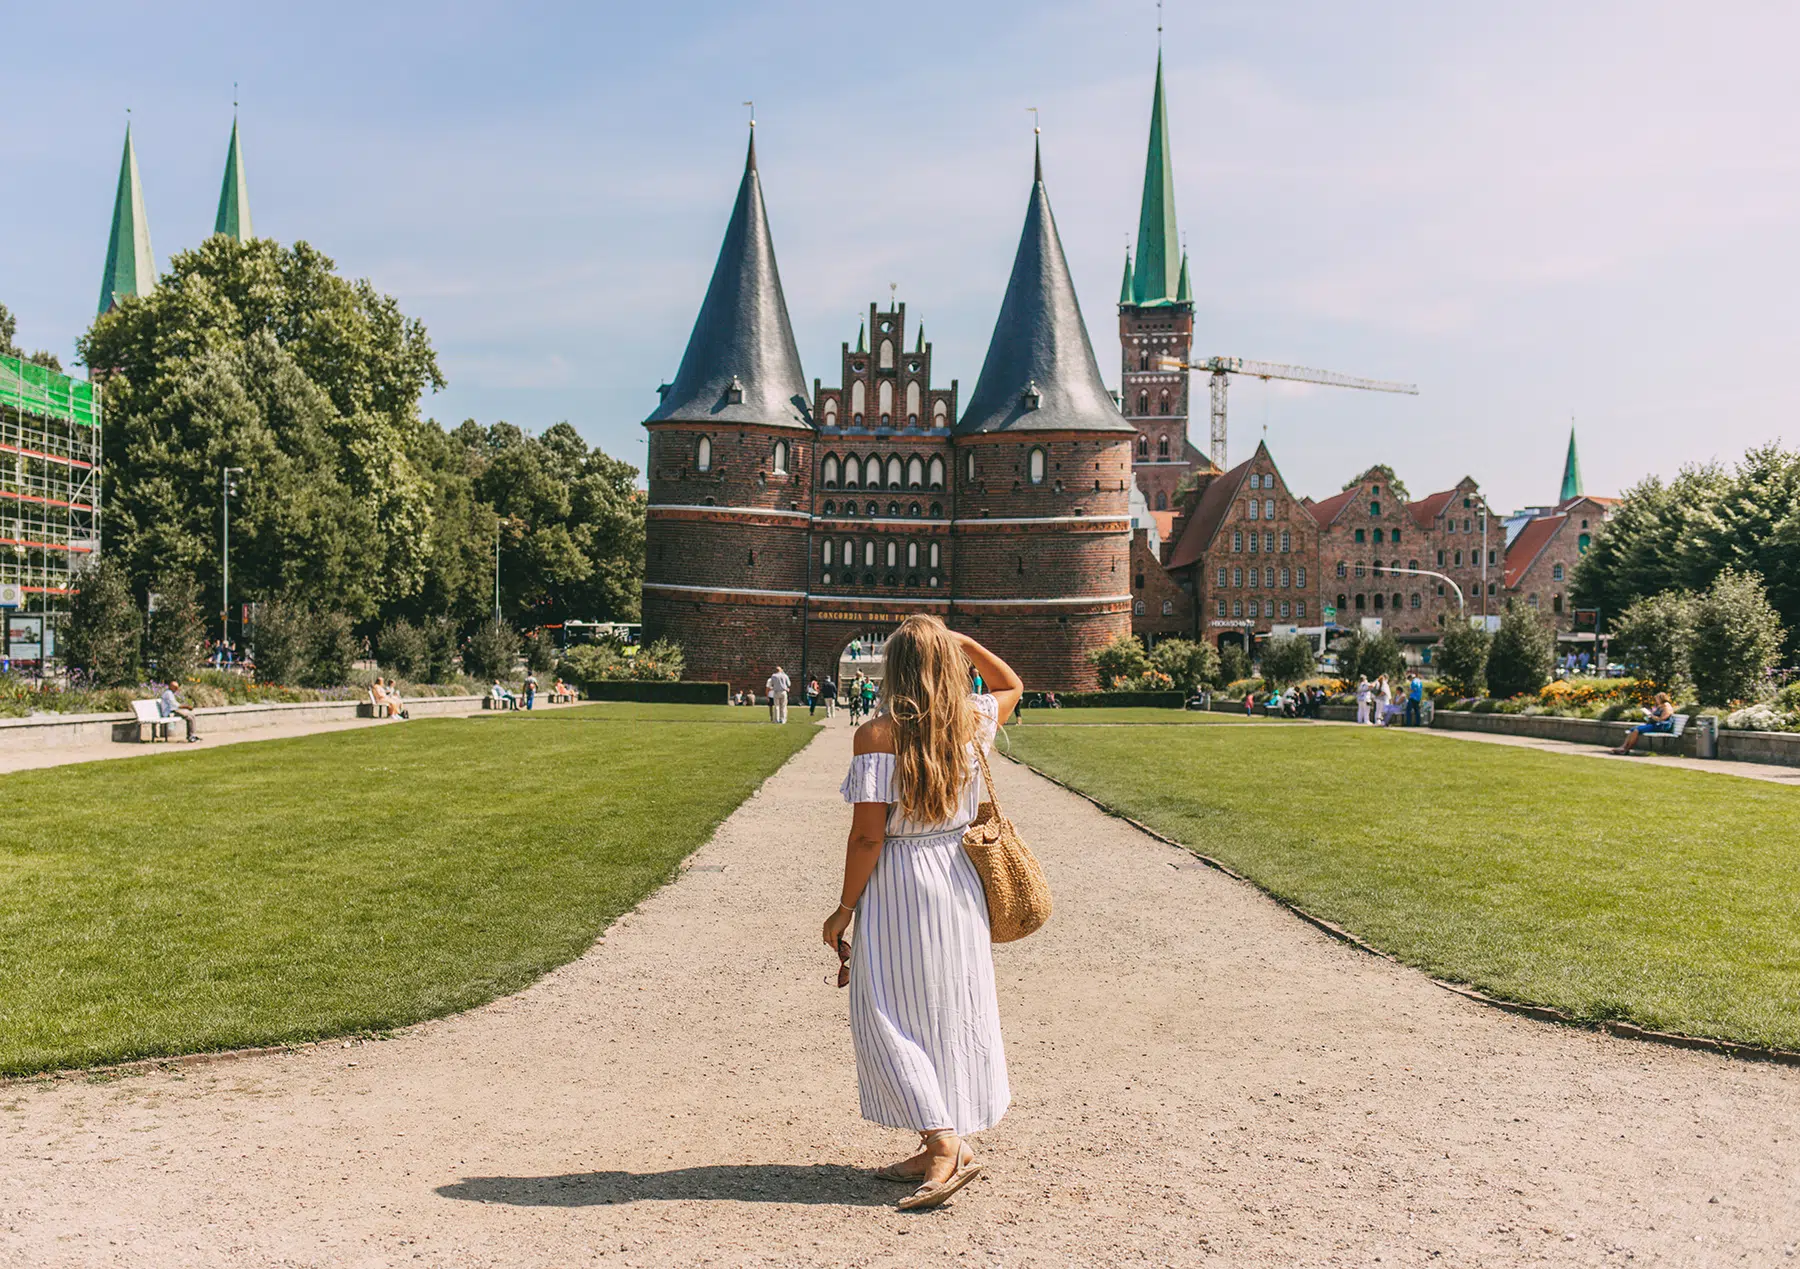 Reisebloggerin Sina Hoyer von Förde Fräulein über Ausflugstipps in Lübeck